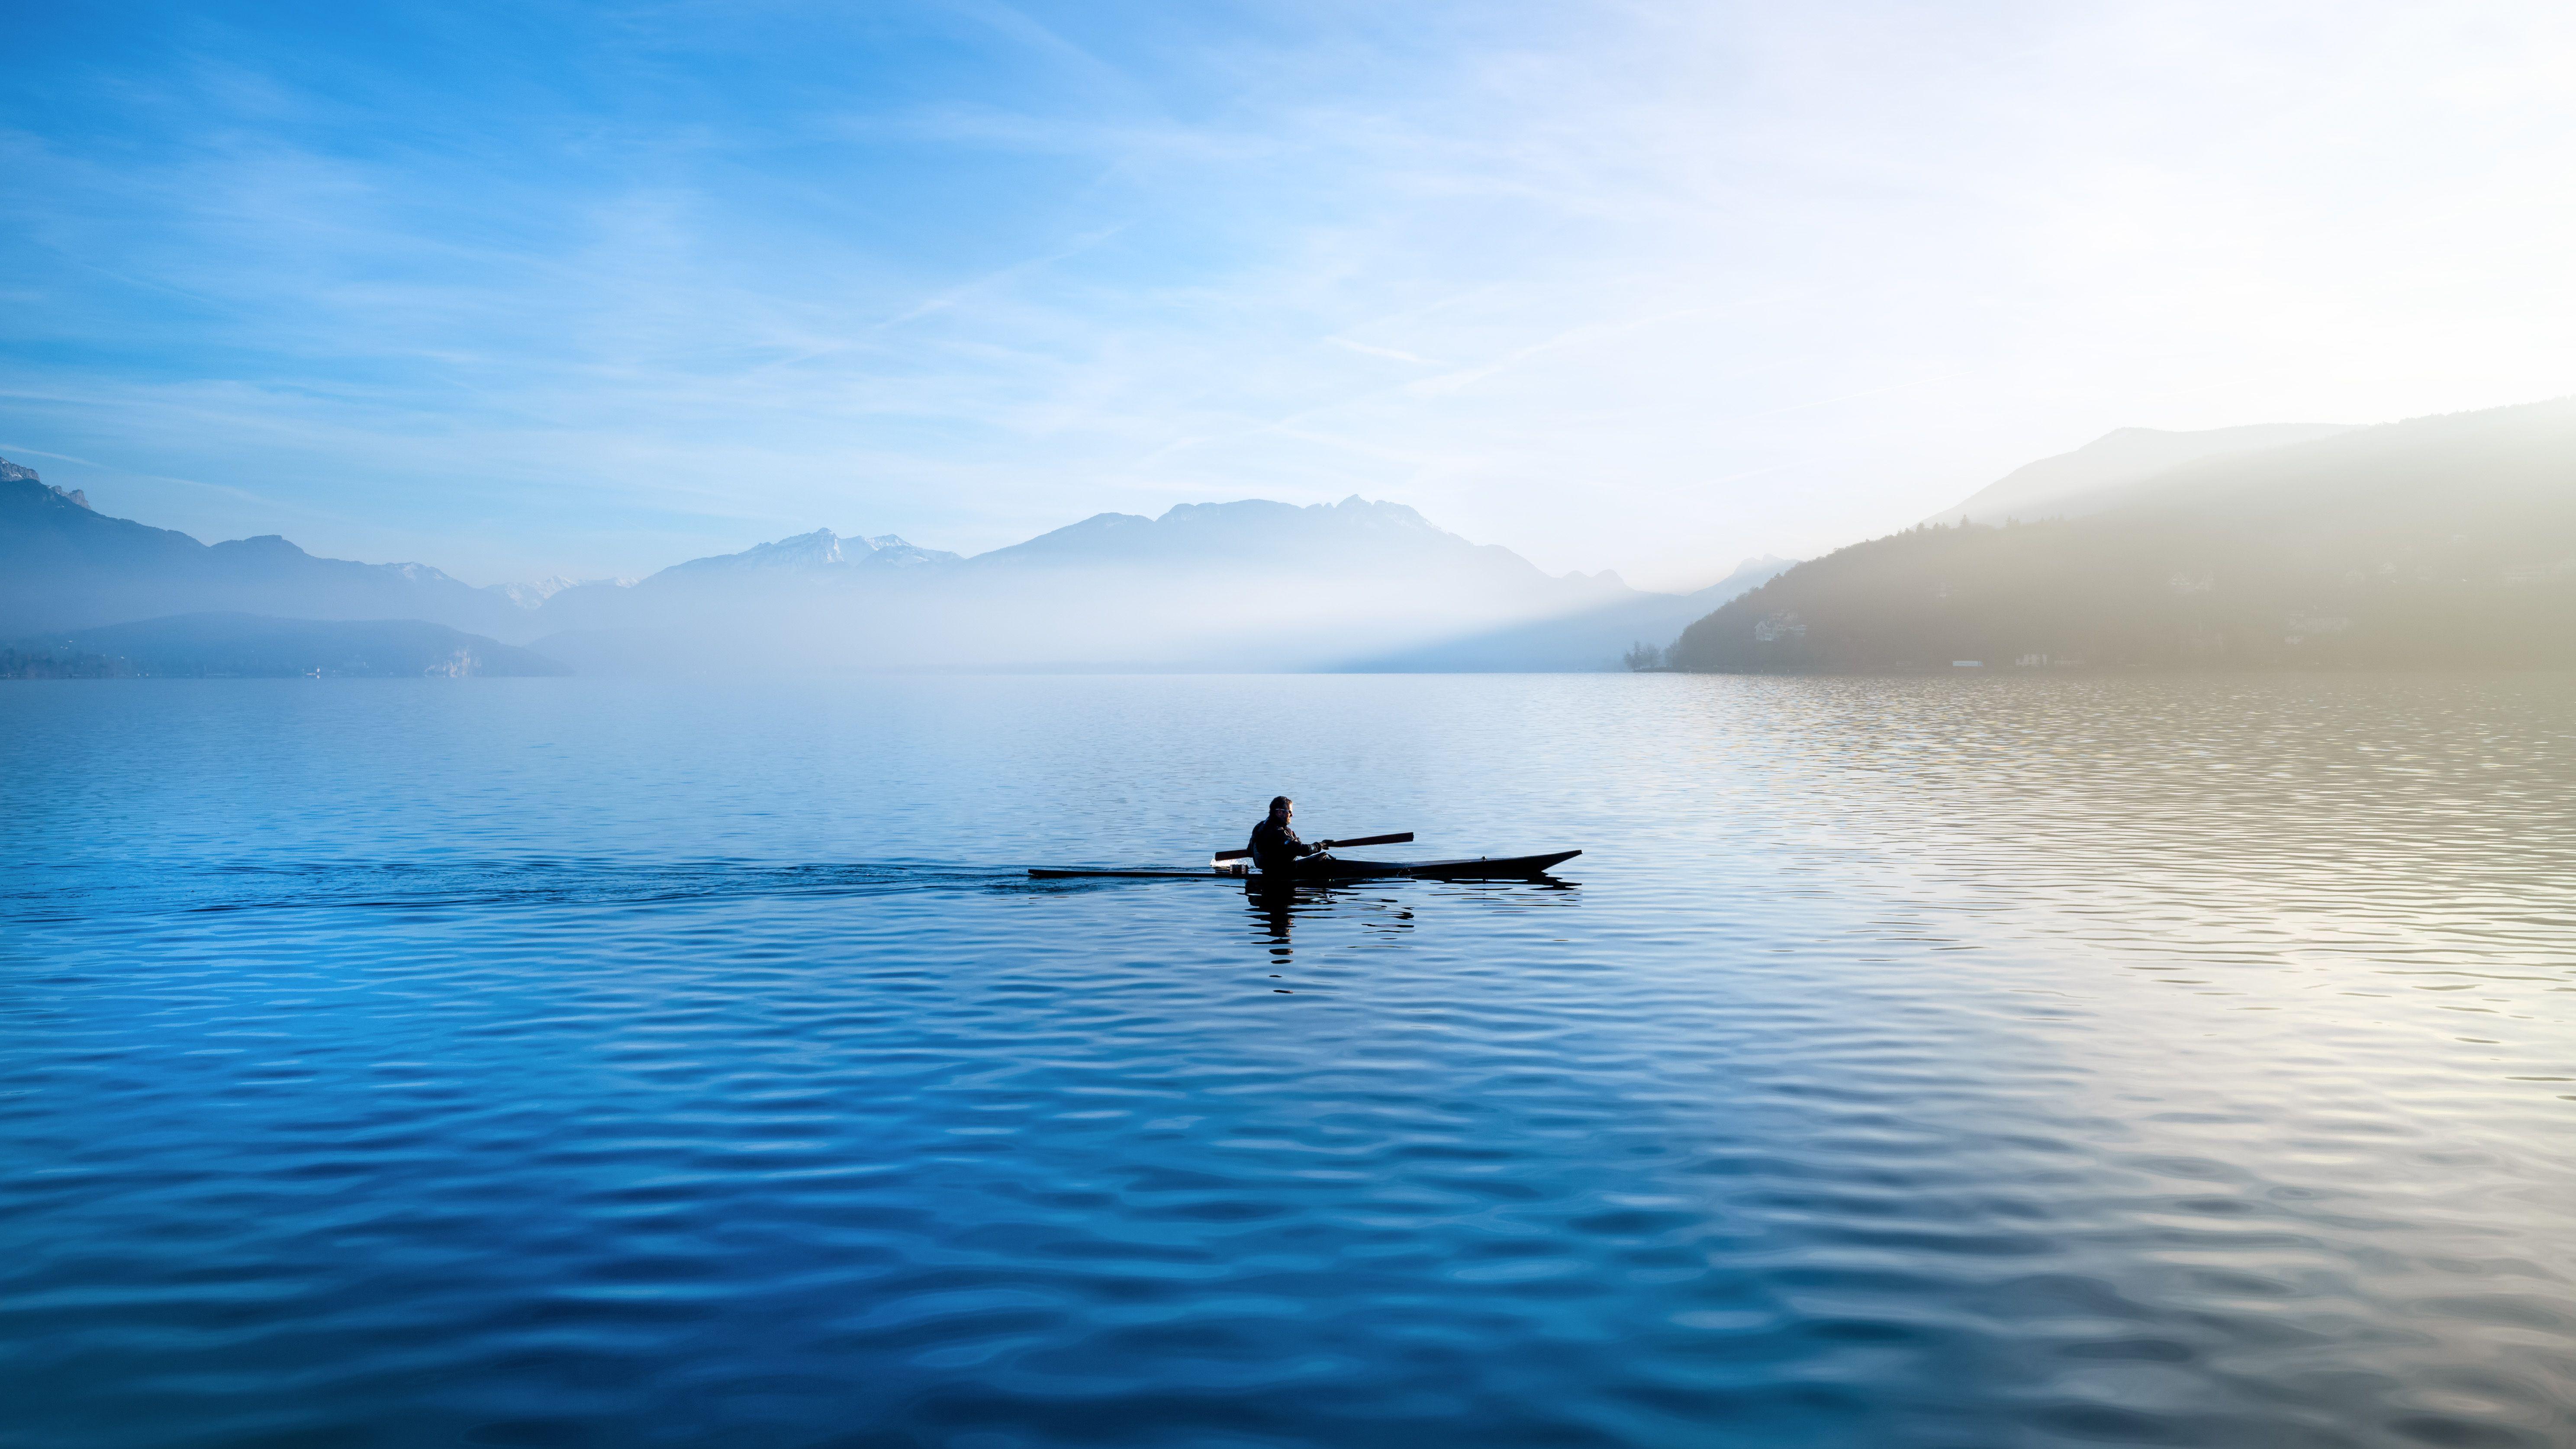 Lake: Hòa mình vào sự yên bình của những con hồ, ngắm nhìn vẻ đẹp đằng sau những màn mây trắng xóa. Hãy tận hưởng khoảnh khắc đẹp nhất trong cuộc đời và lưu giữ những kỷ niệm đáng nhớ.